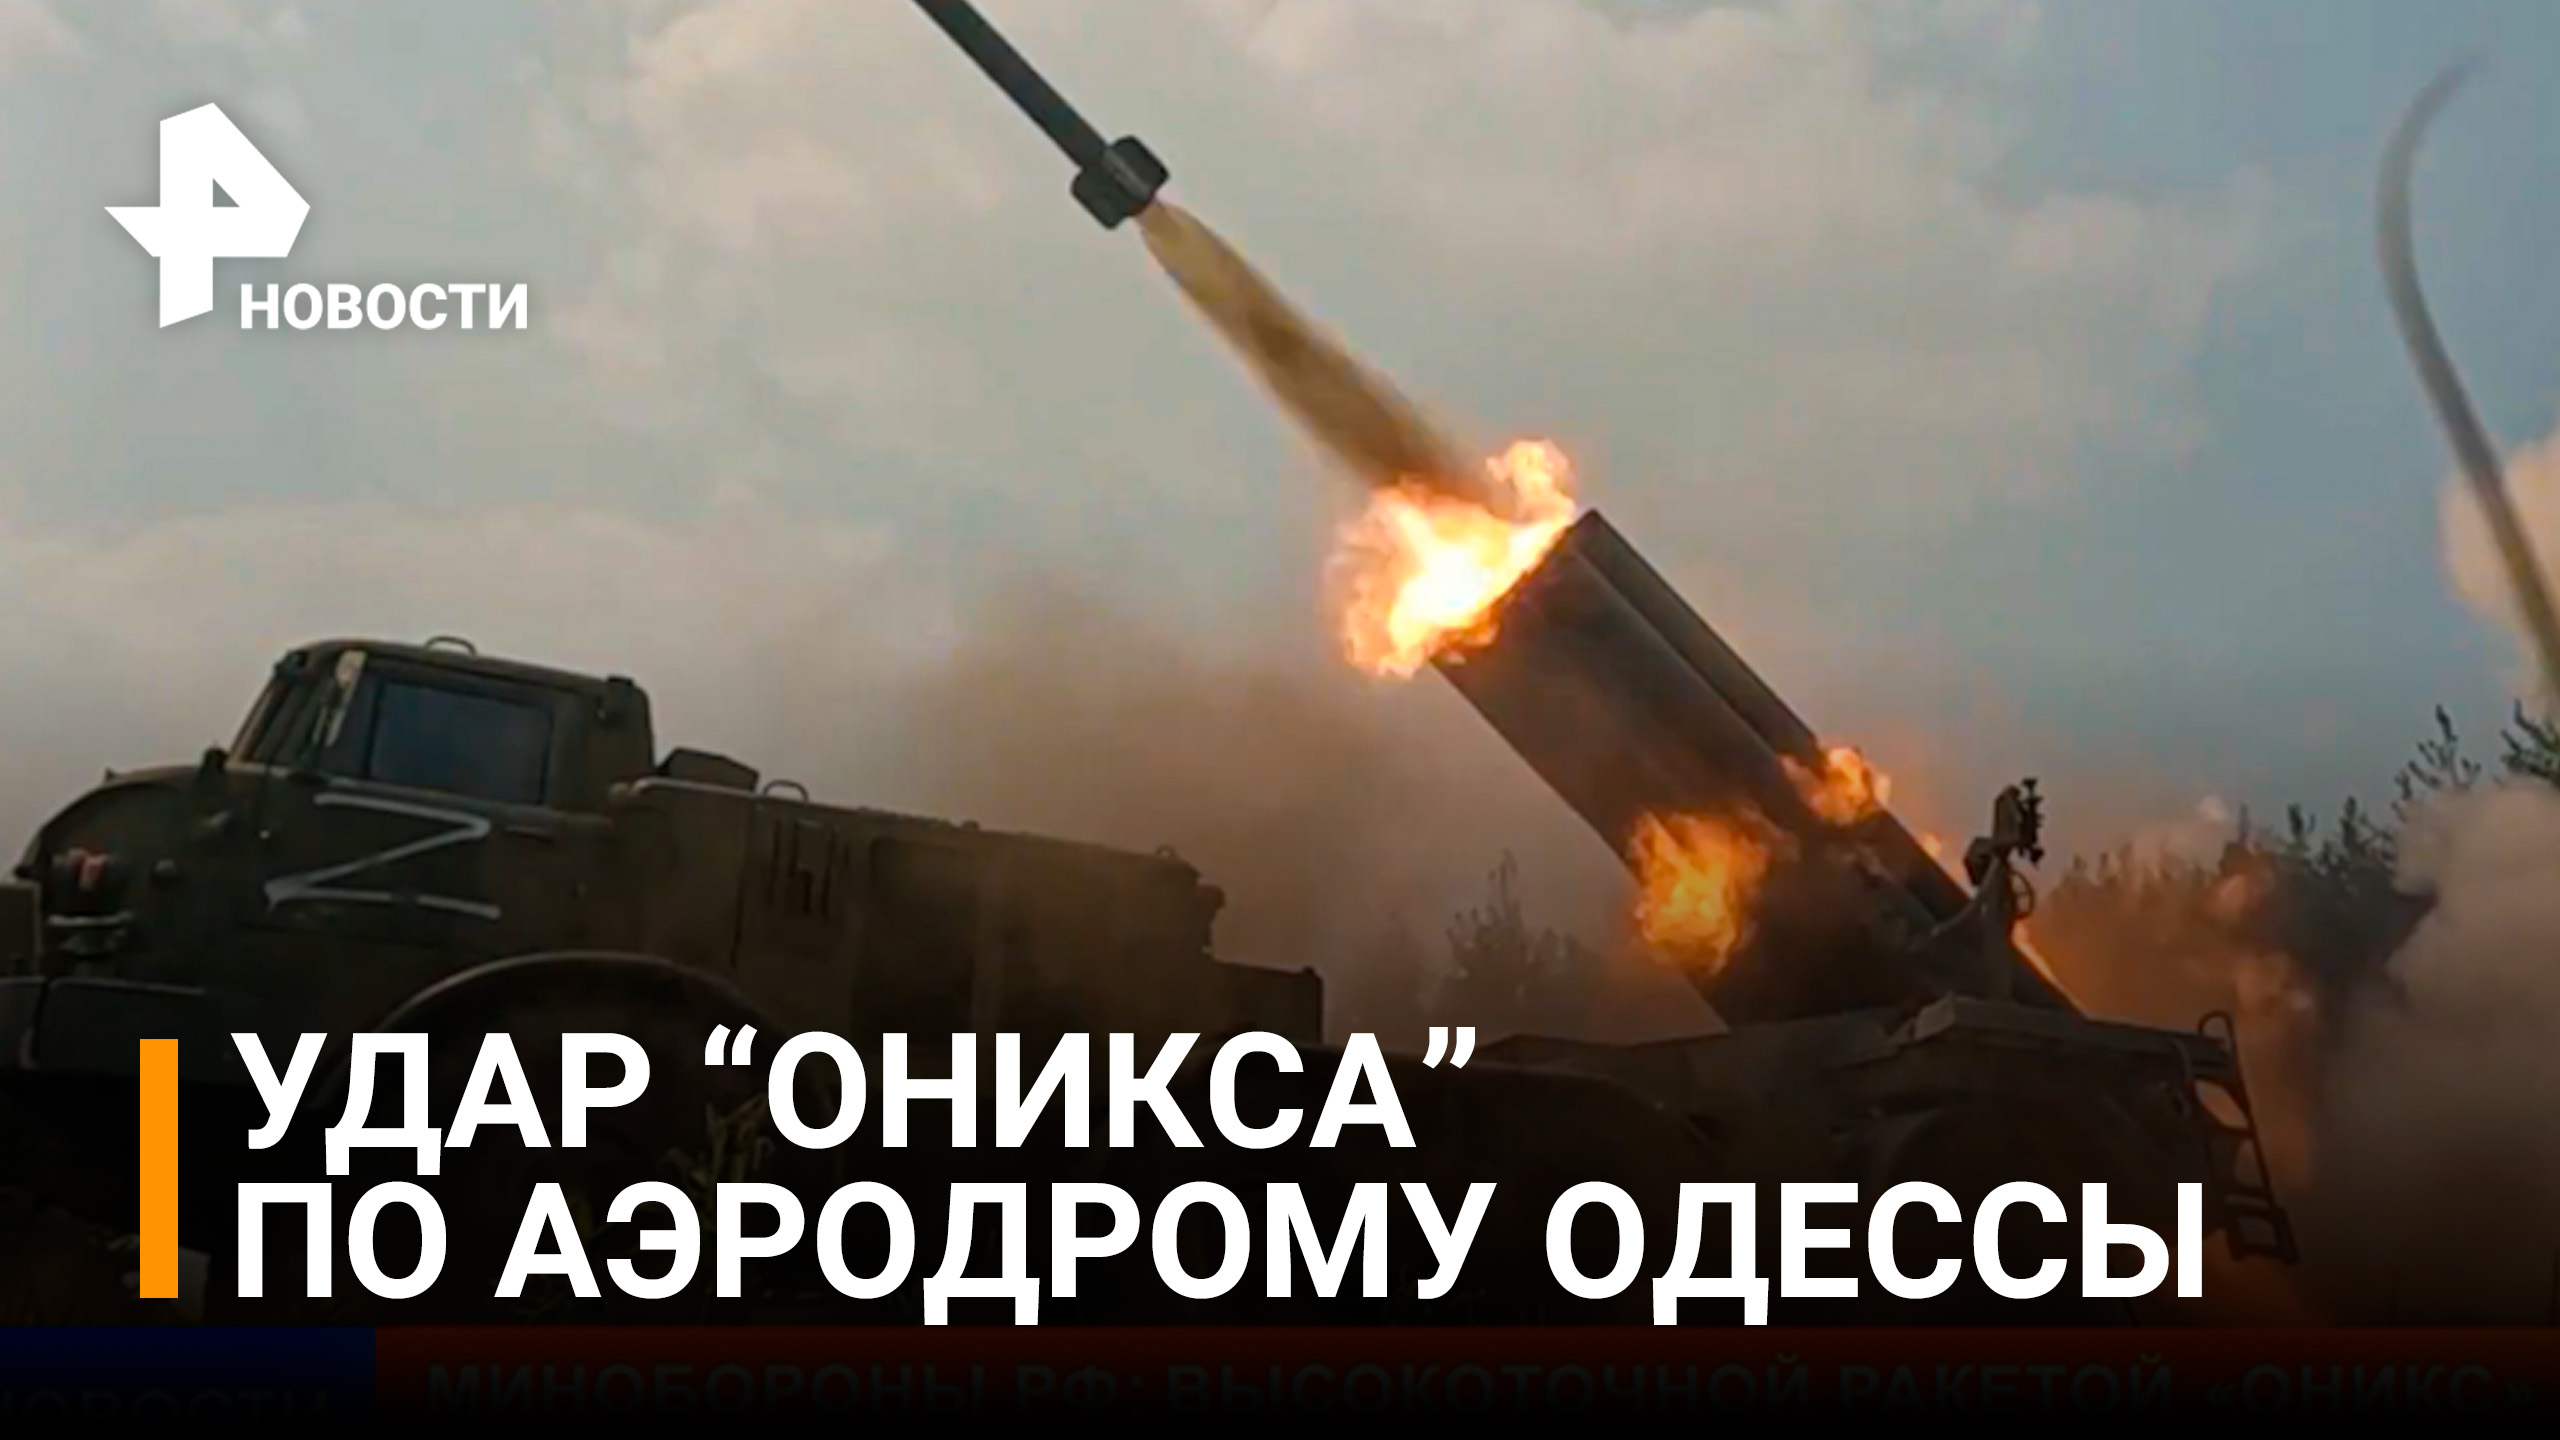 Минобороны РФ: высокоточной ракетой "Оникс" нанесен удар по аэродрому Одесской области / РЕН Новости